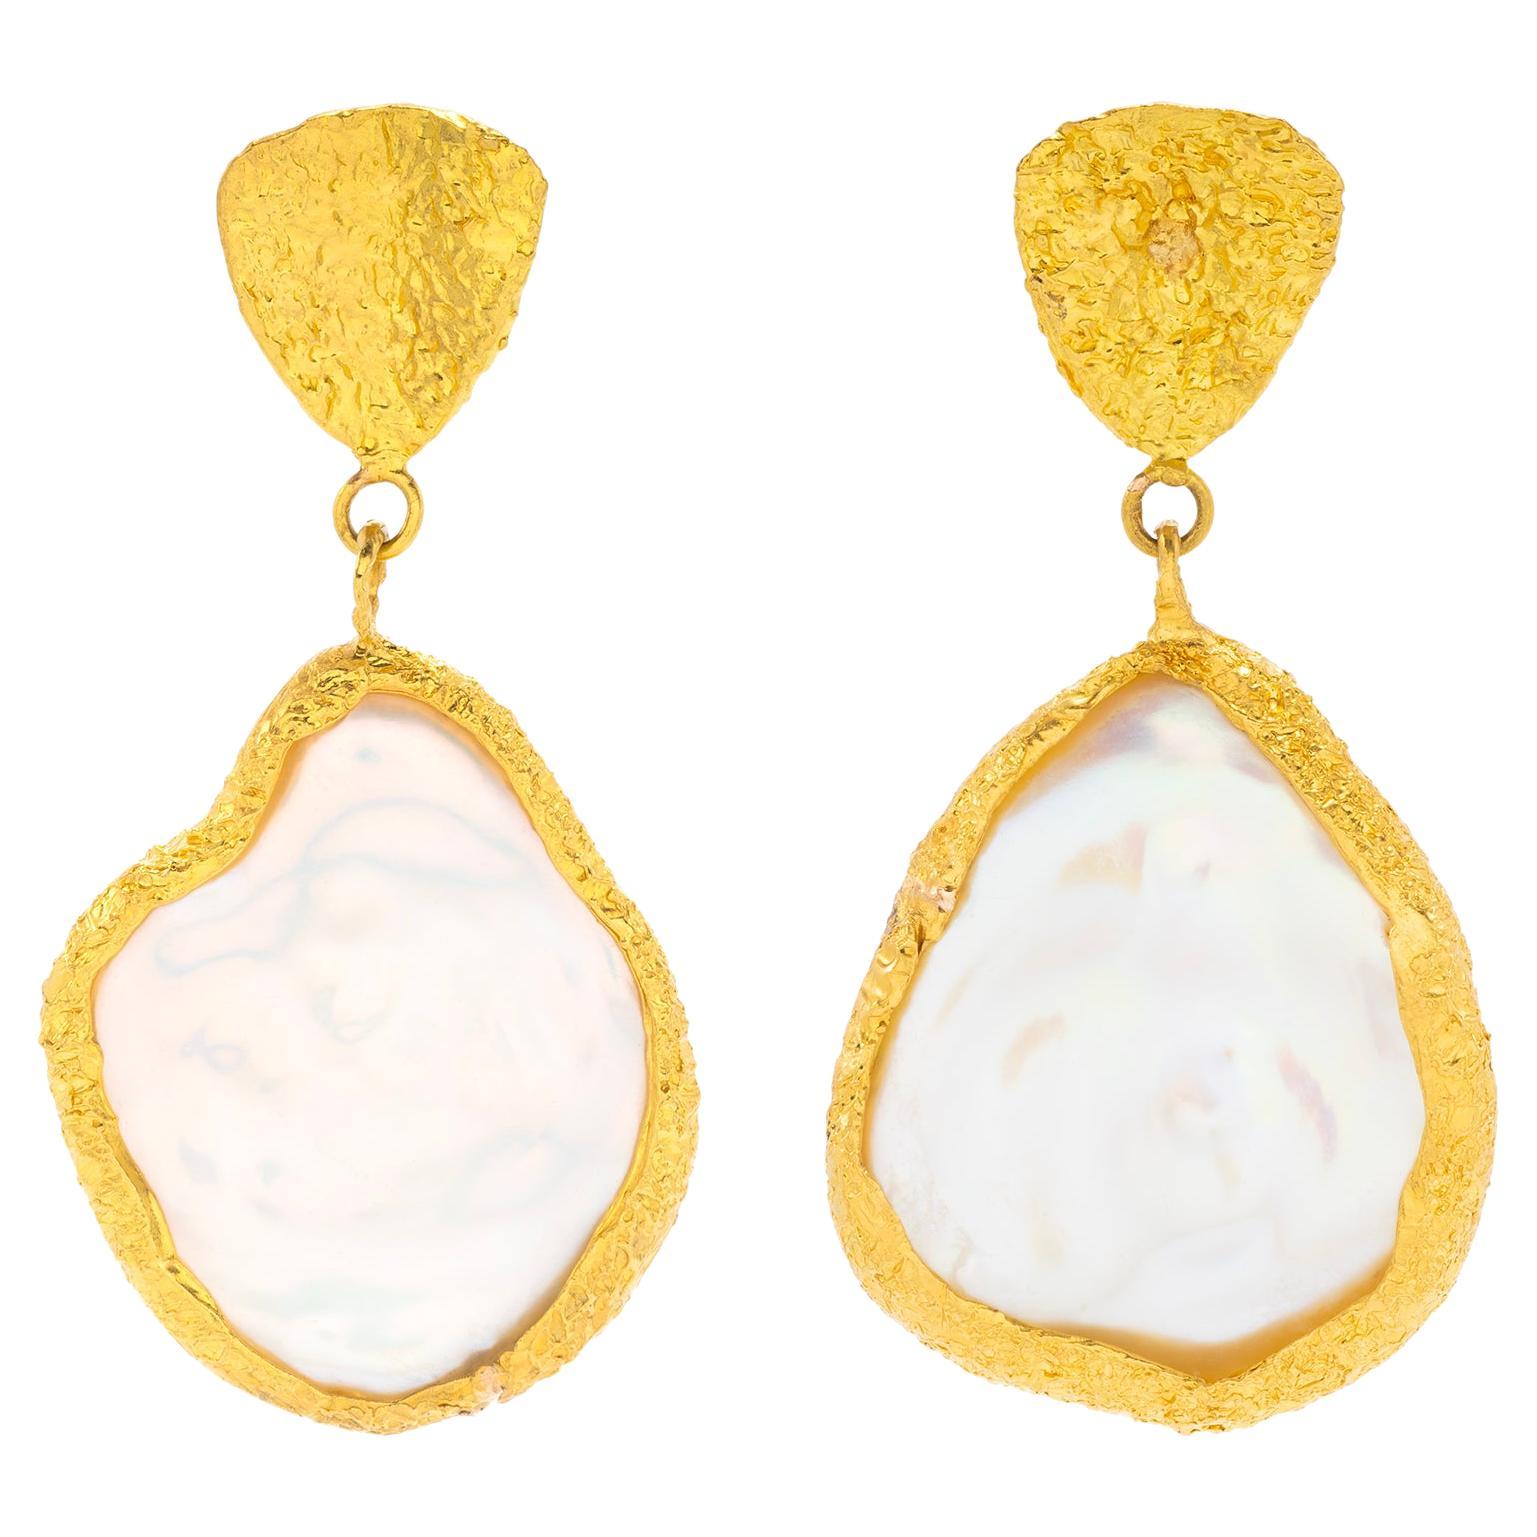 22k Gold Pearl Teardrop Earrings by Tagili